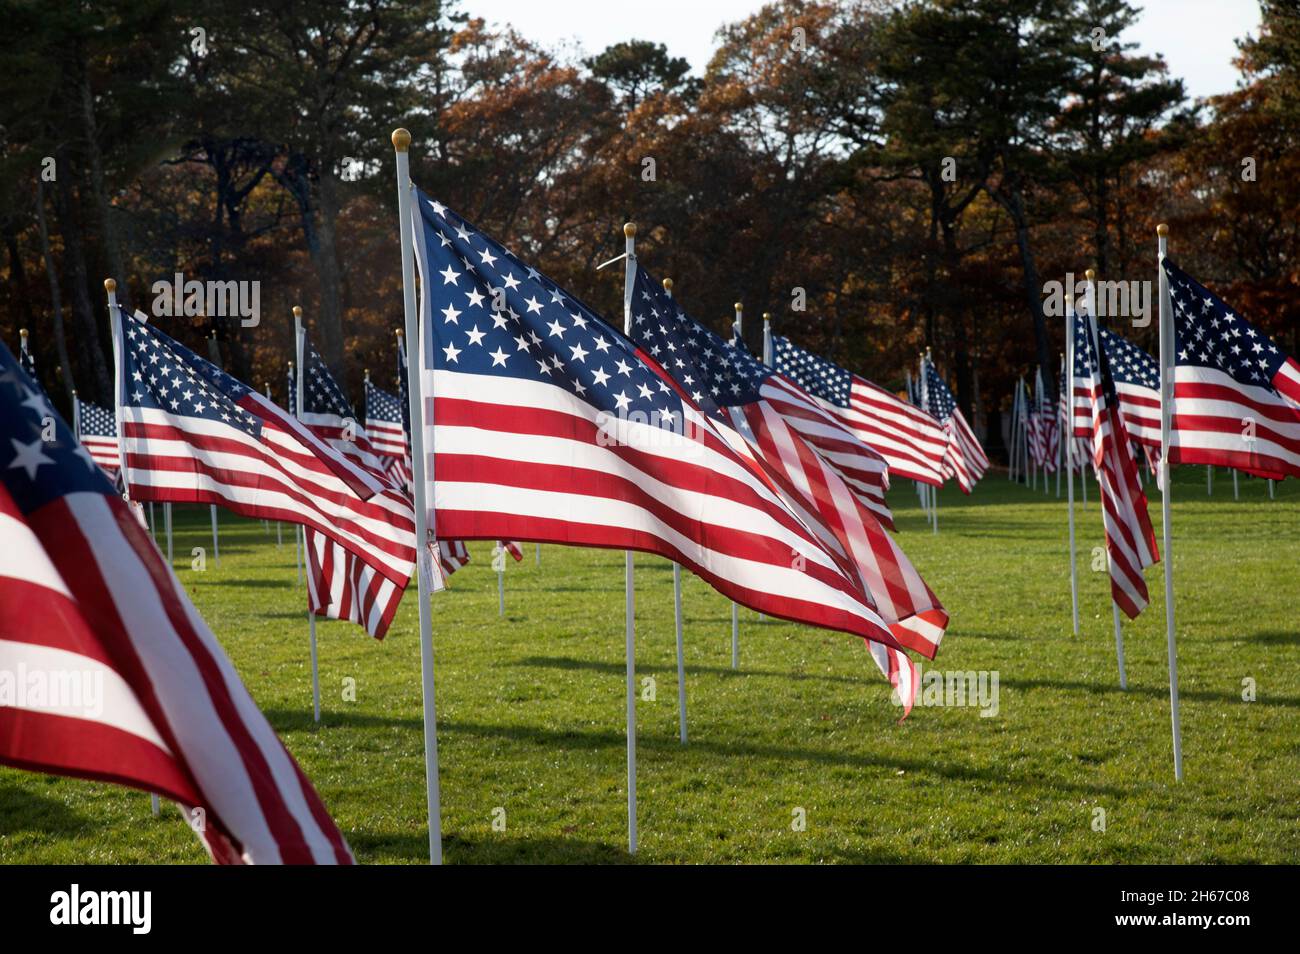 Dennis (Cape Cod, Massachusetts), Campo de Honor. Un saludo del Día de los Veteranos a aquellos que han servido. 400 banderas patrocinadas de EE.UU. Sean individuos en la memoria o Foto de stock